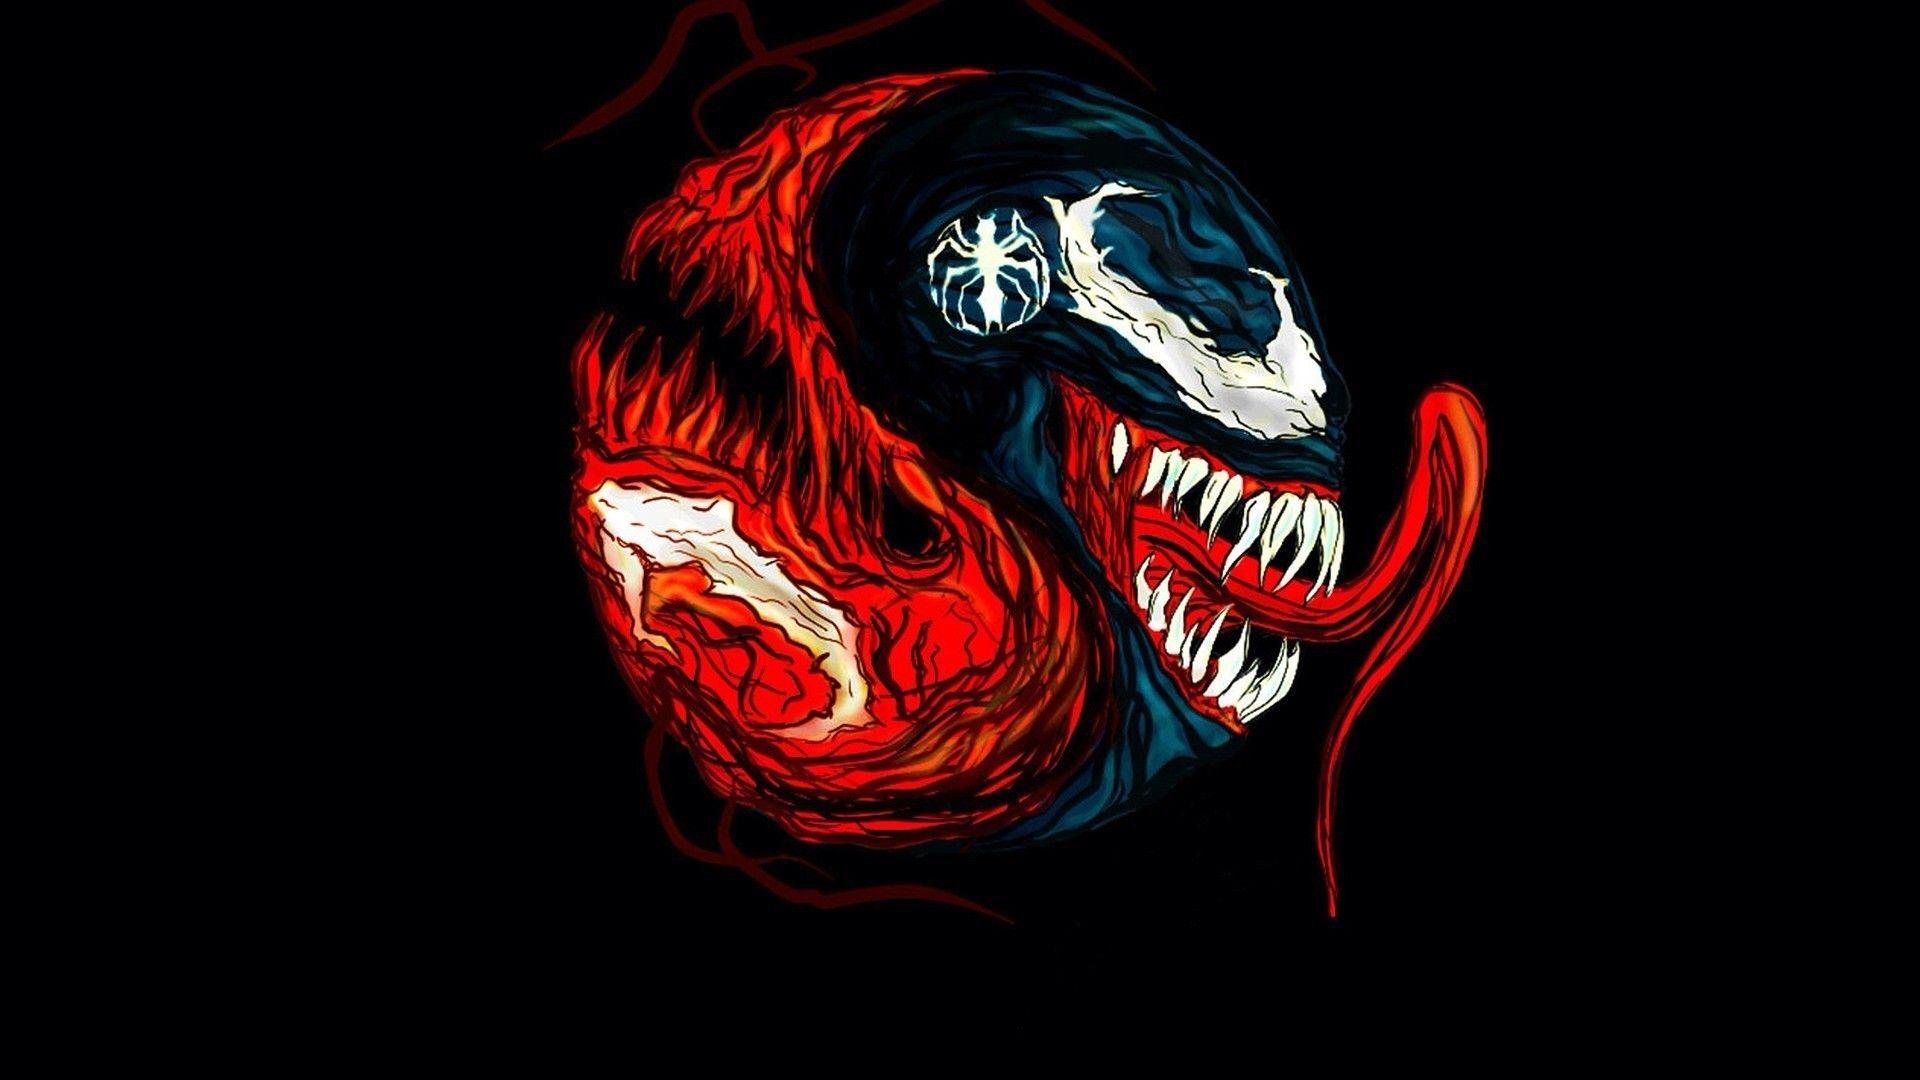 Venom Band Wallpaper